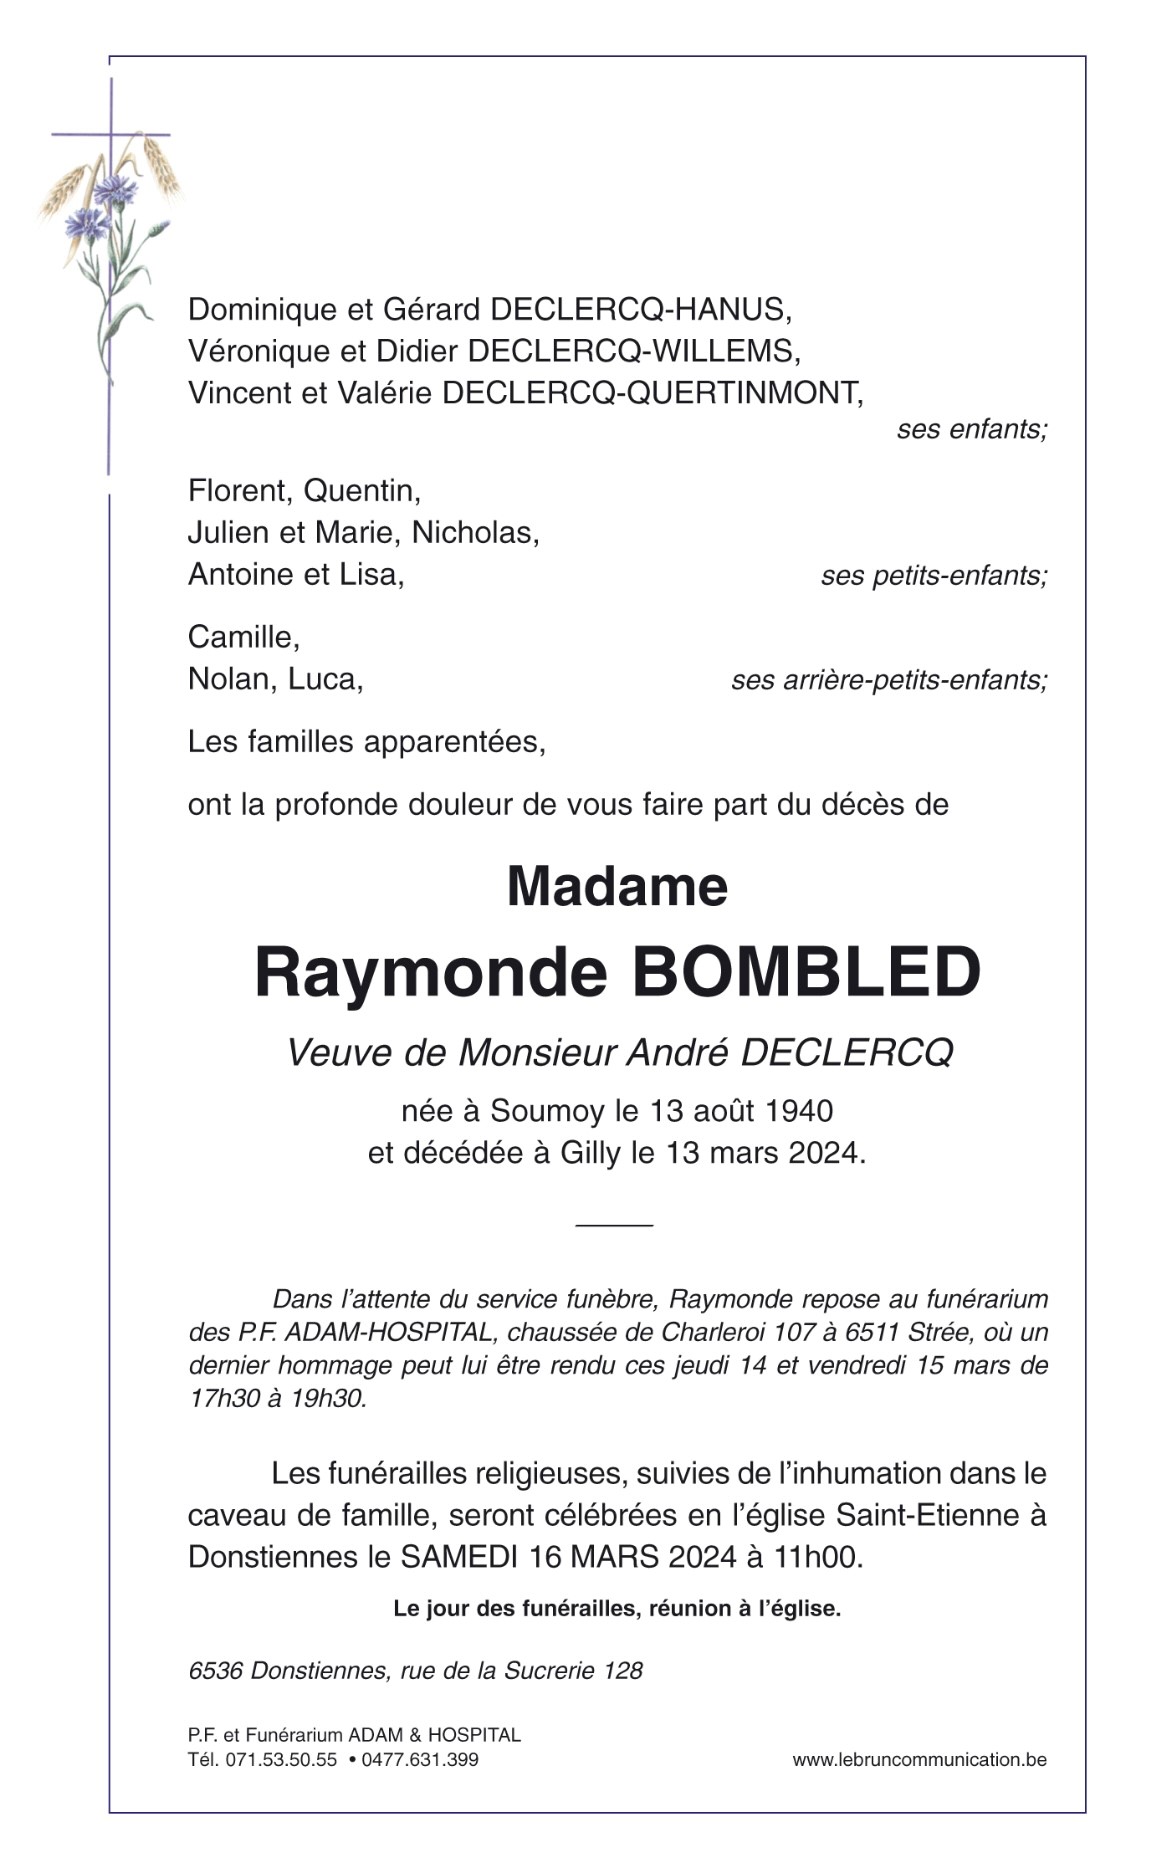 Raymonde Bombled | Funérailles Adam Hospital